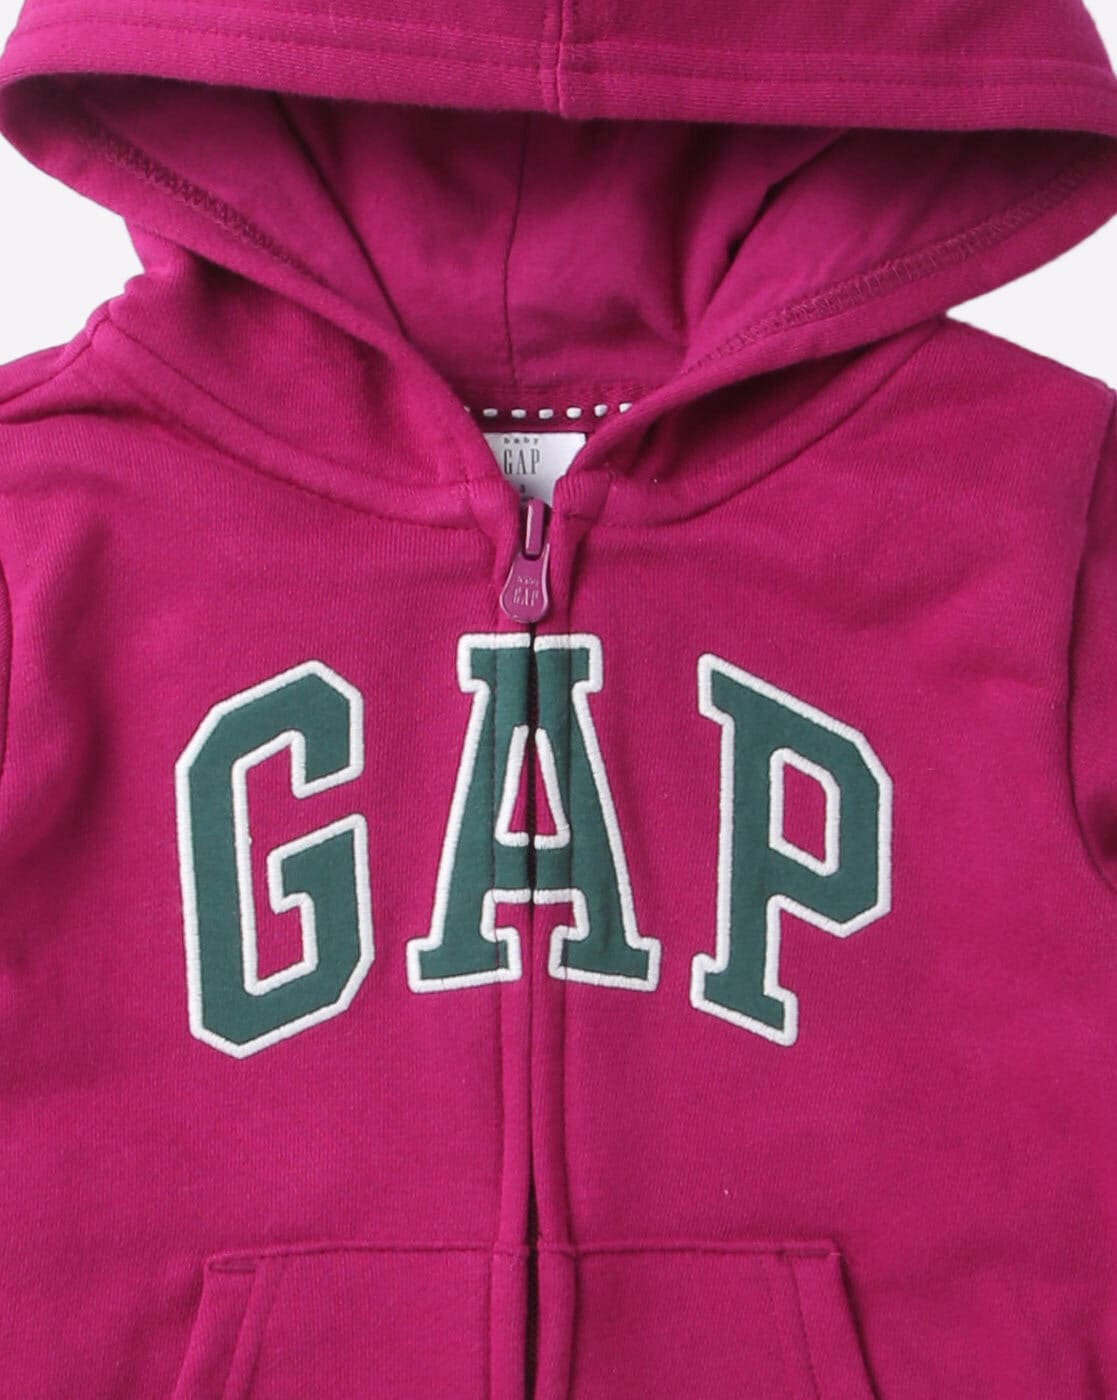 Buy Purple Sweatshirts & Jacket for Infants by Gap Kids Online